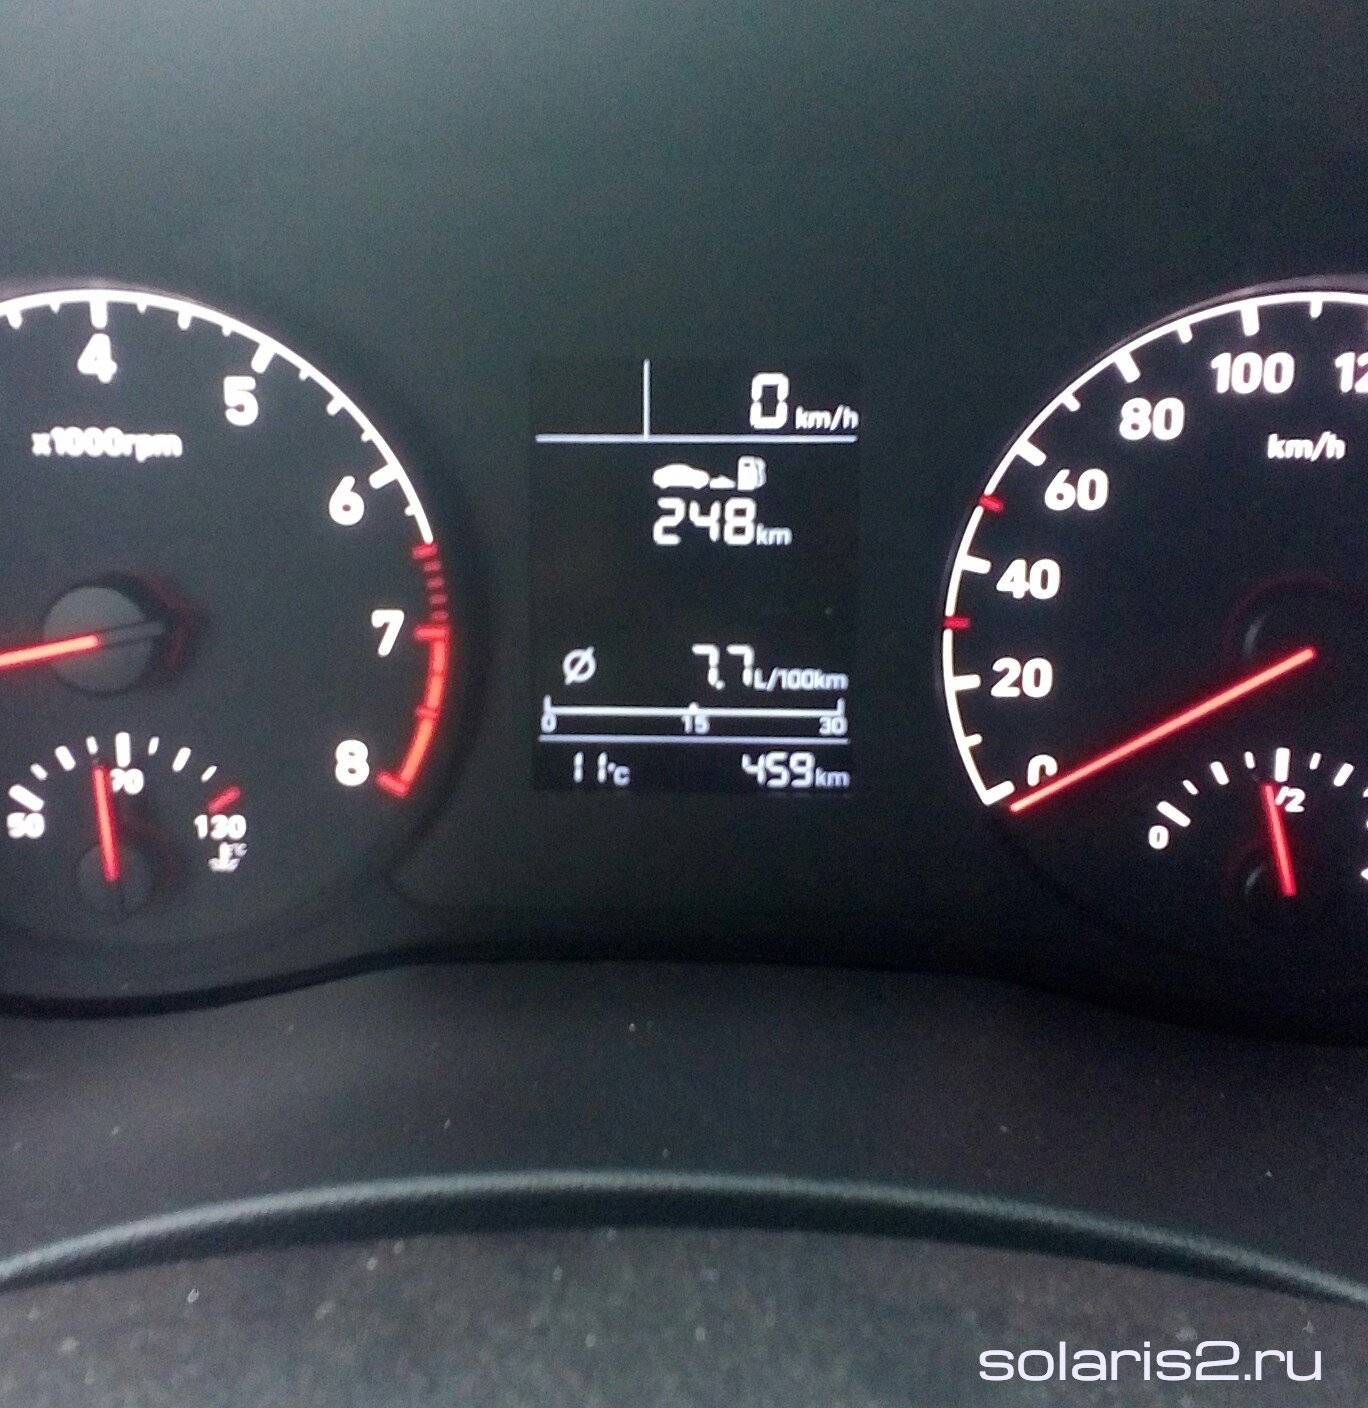 Hyundai solaris 1.4, 1.6 реальные отзывы о расходе топлива: бензина на автомате и механике